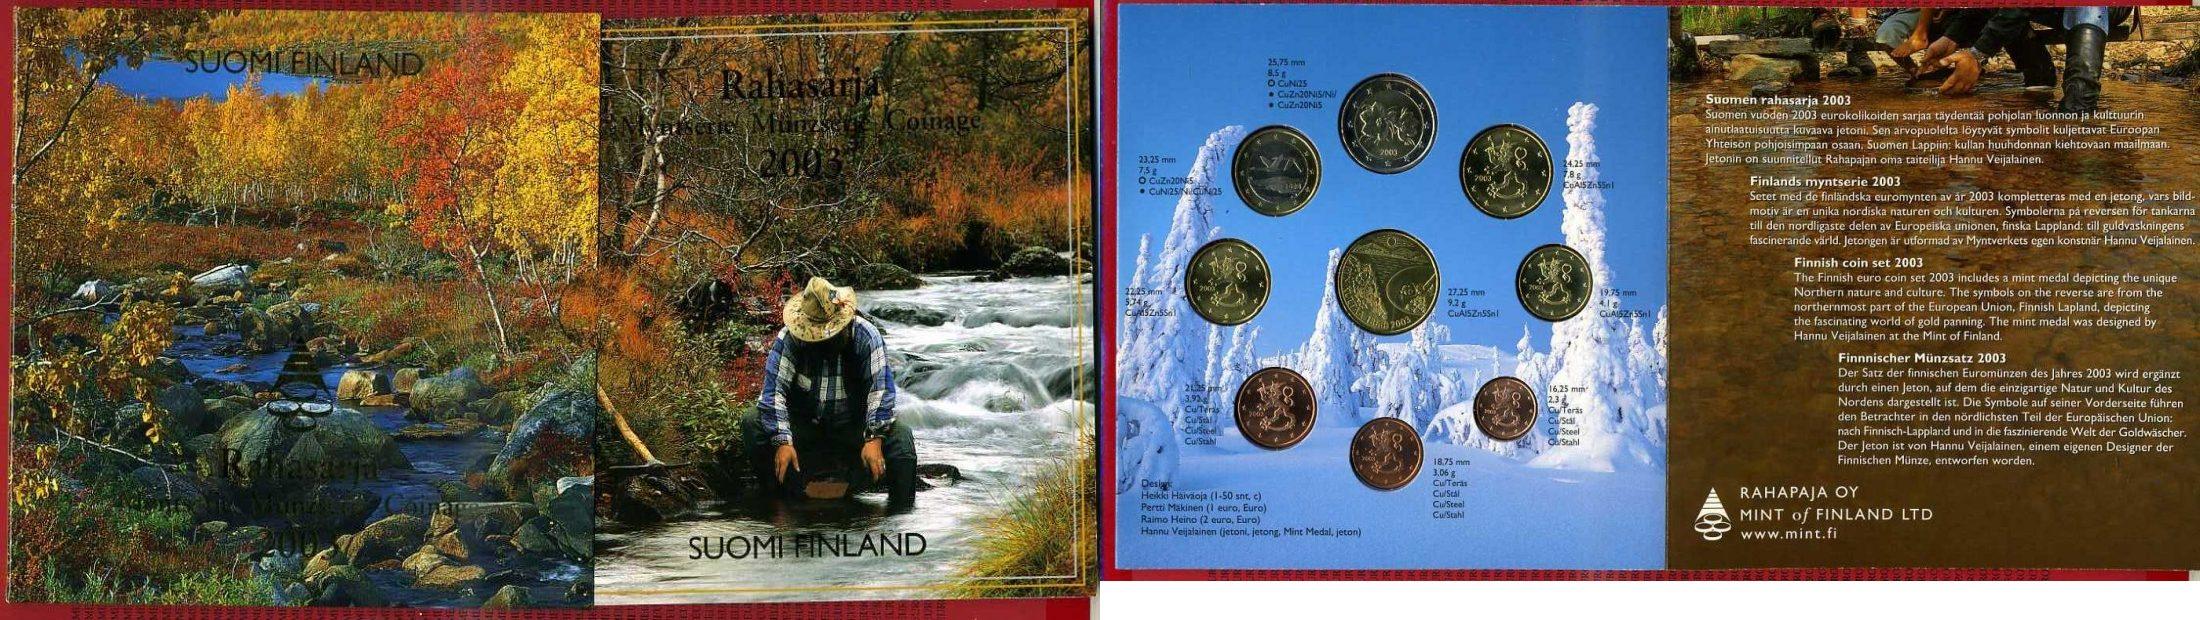 Foto Finland, Finnland, Euro Kursmünzensatz Offiziell, 3,88 Euro 2003